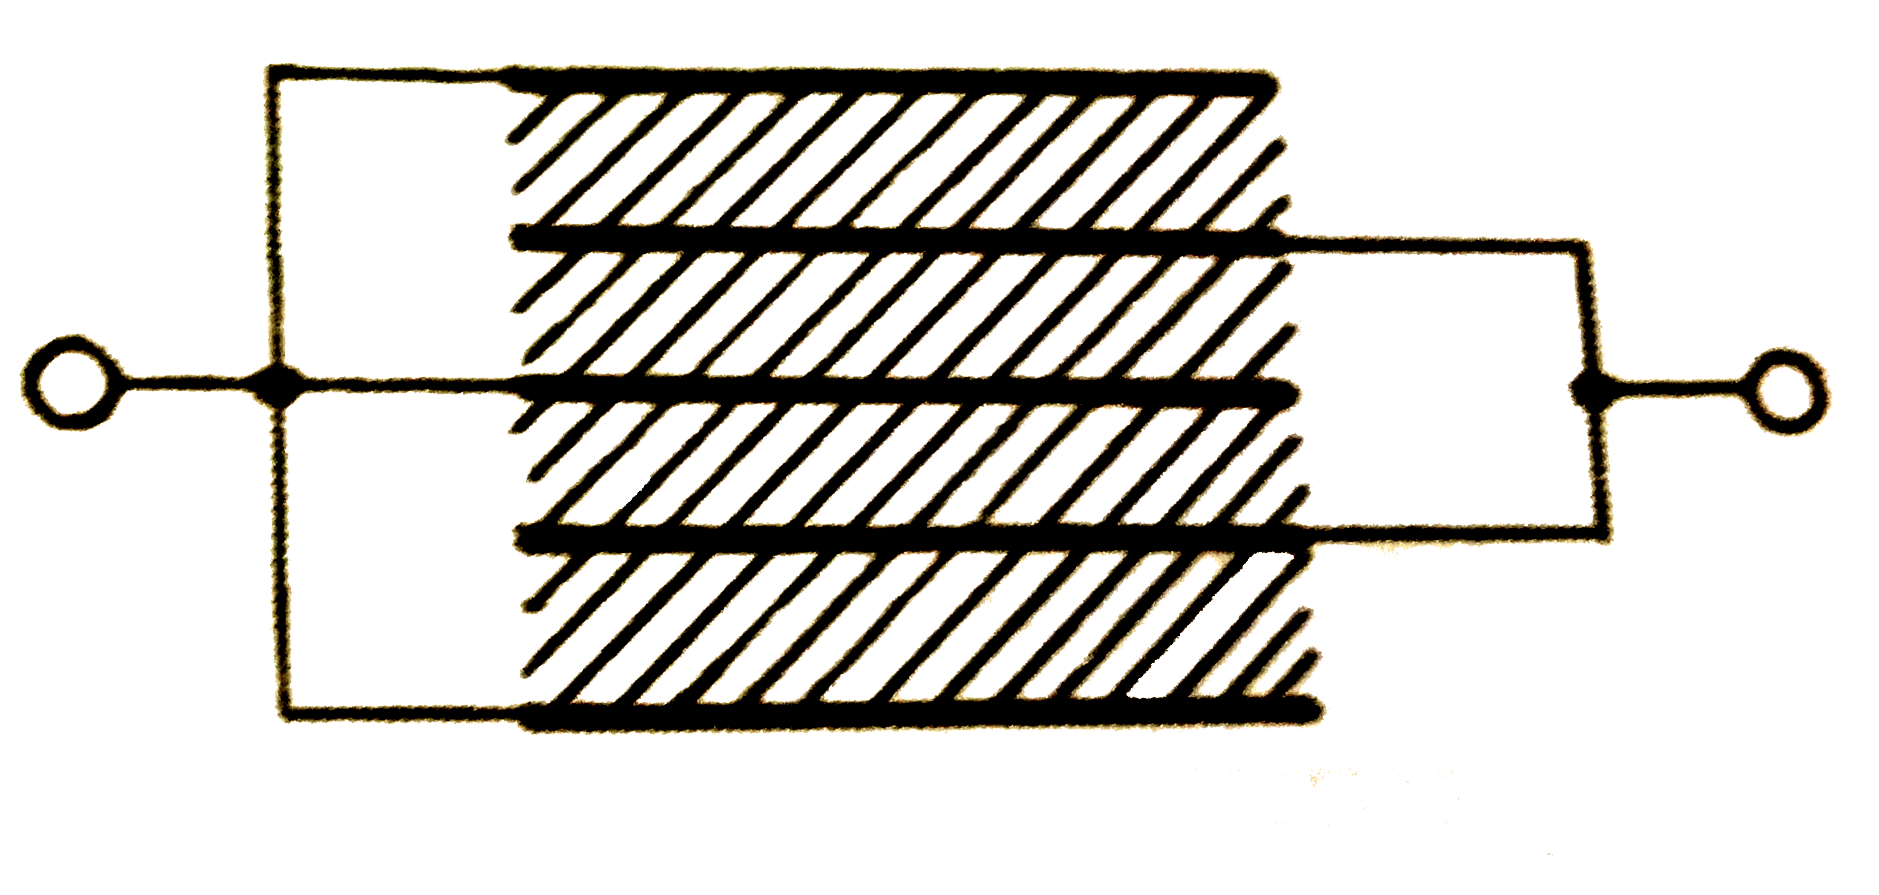 चित्र में दिखाये गये अभ्रक (K) संधारित्र की प्रत्येक प्लेट का क्षेत्रफल A